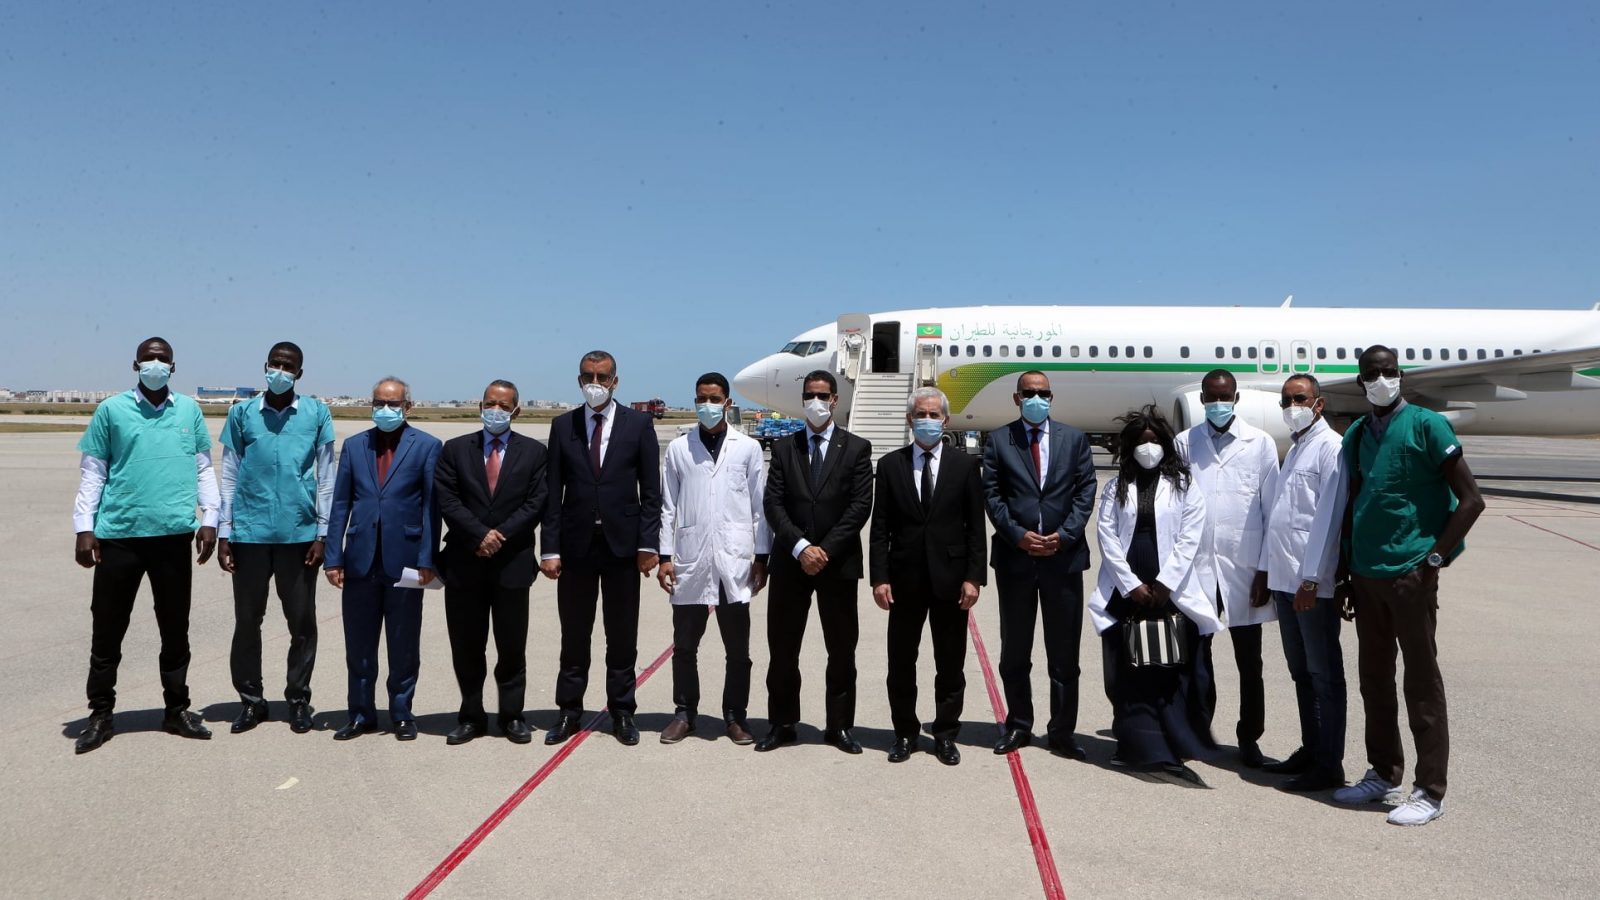 وصول طائرتين موريتانيتين محملة بمعدات طبية واطارت طبية وشبه طبية الى تونس (فيديو)